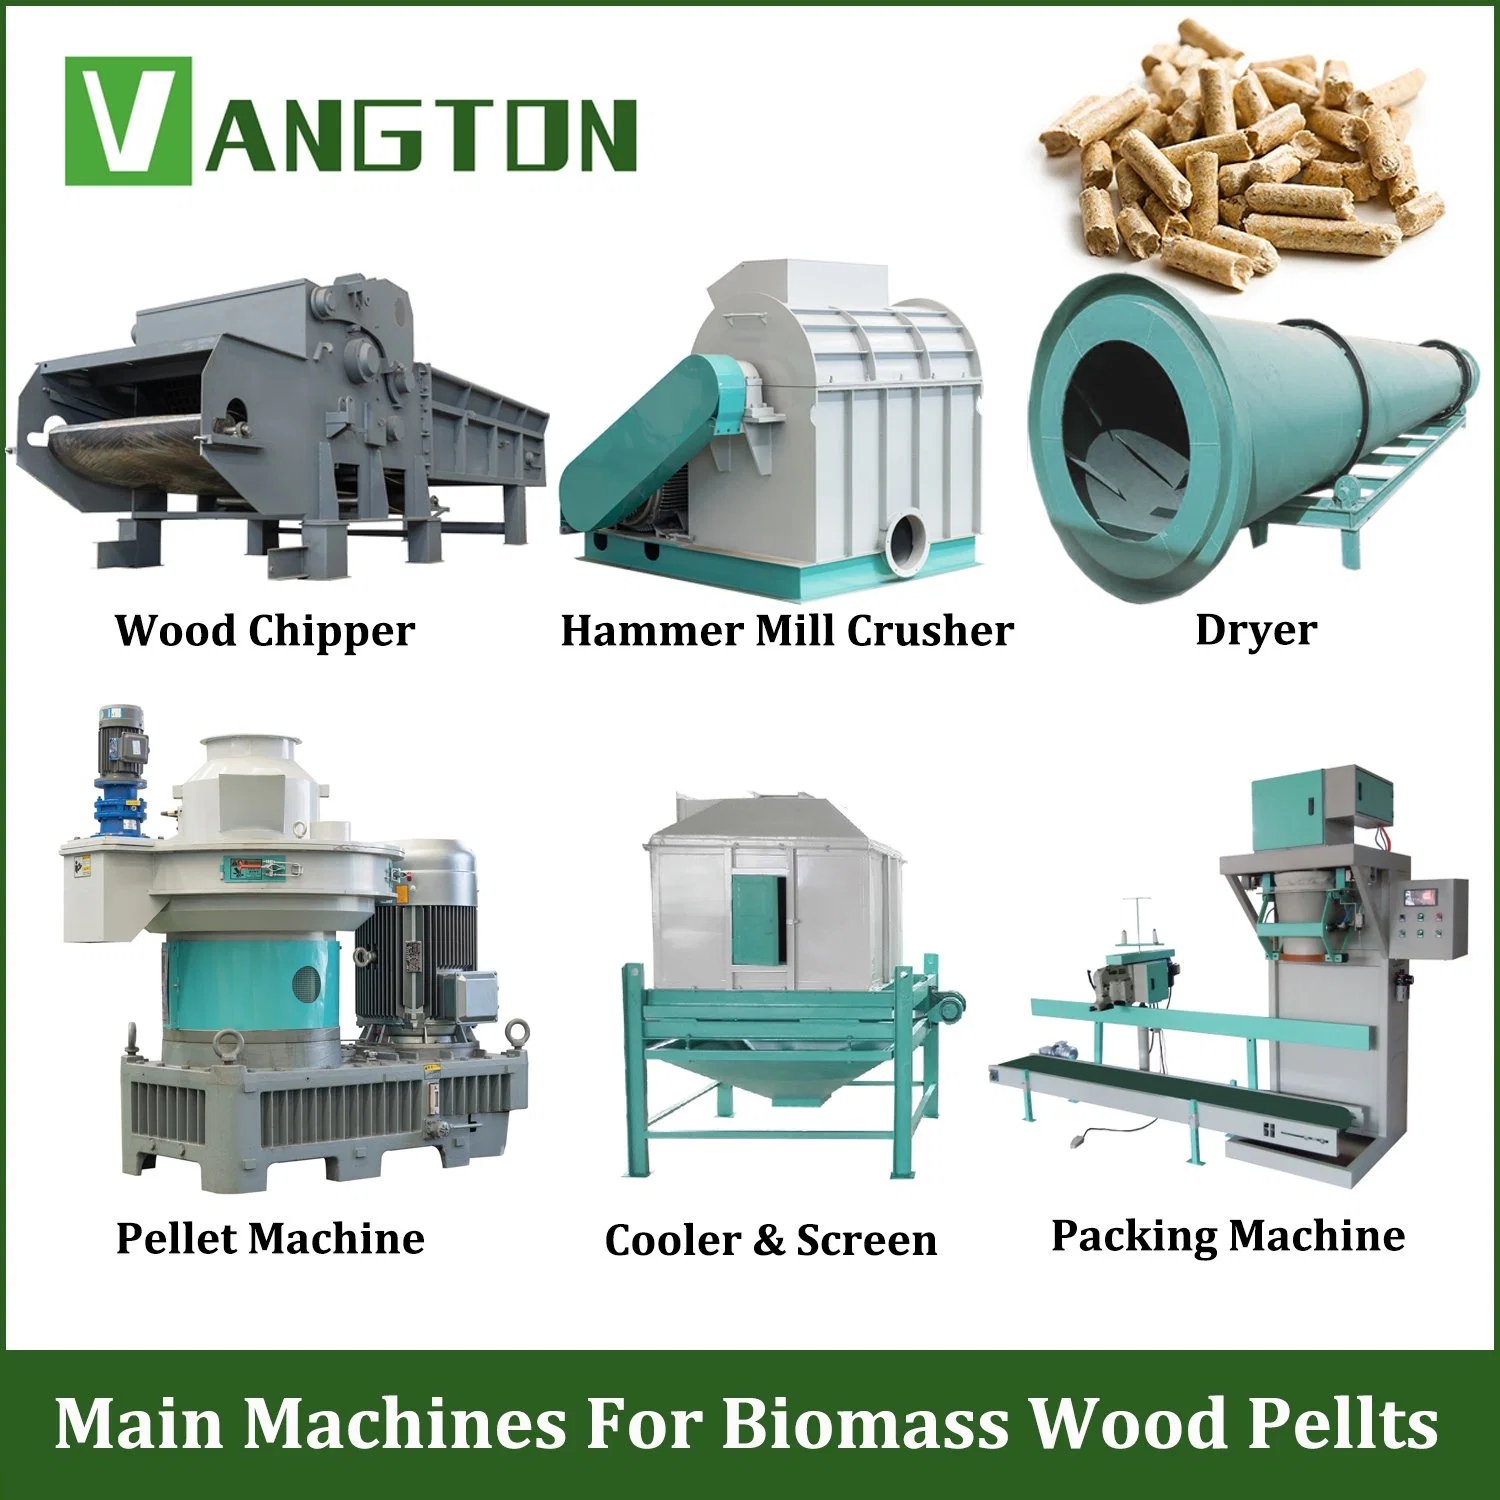 Usine de granulation de paille de blé, de biomasse de bois et de sciure de bois pour la fabrication de granulés - Fournisseurs.